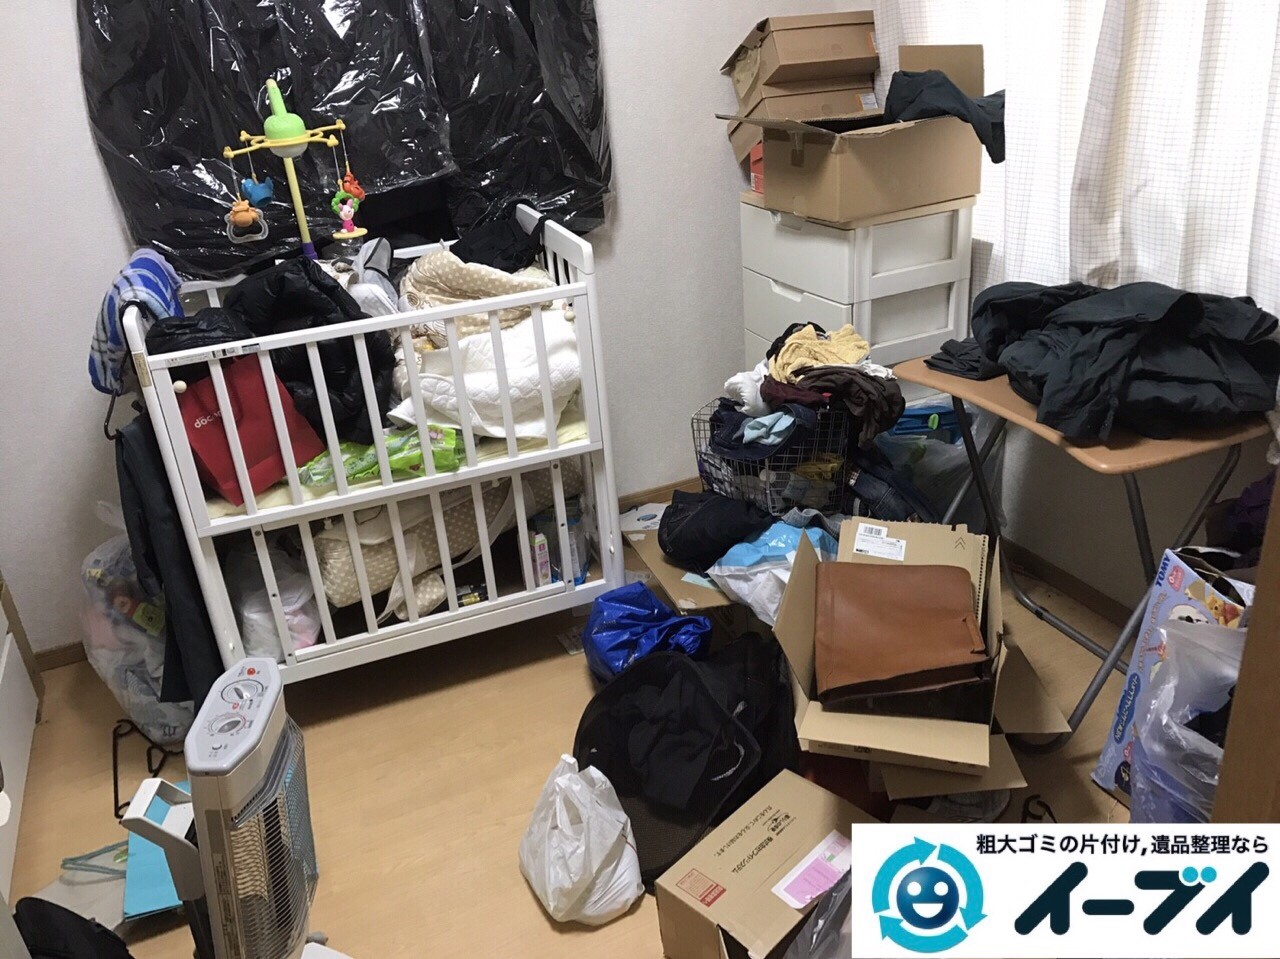 2017年9月1日大阪府大阪市西区大掃除に伴う粗大ゴミや廃品の片付けと不用品回収をしました。写真6